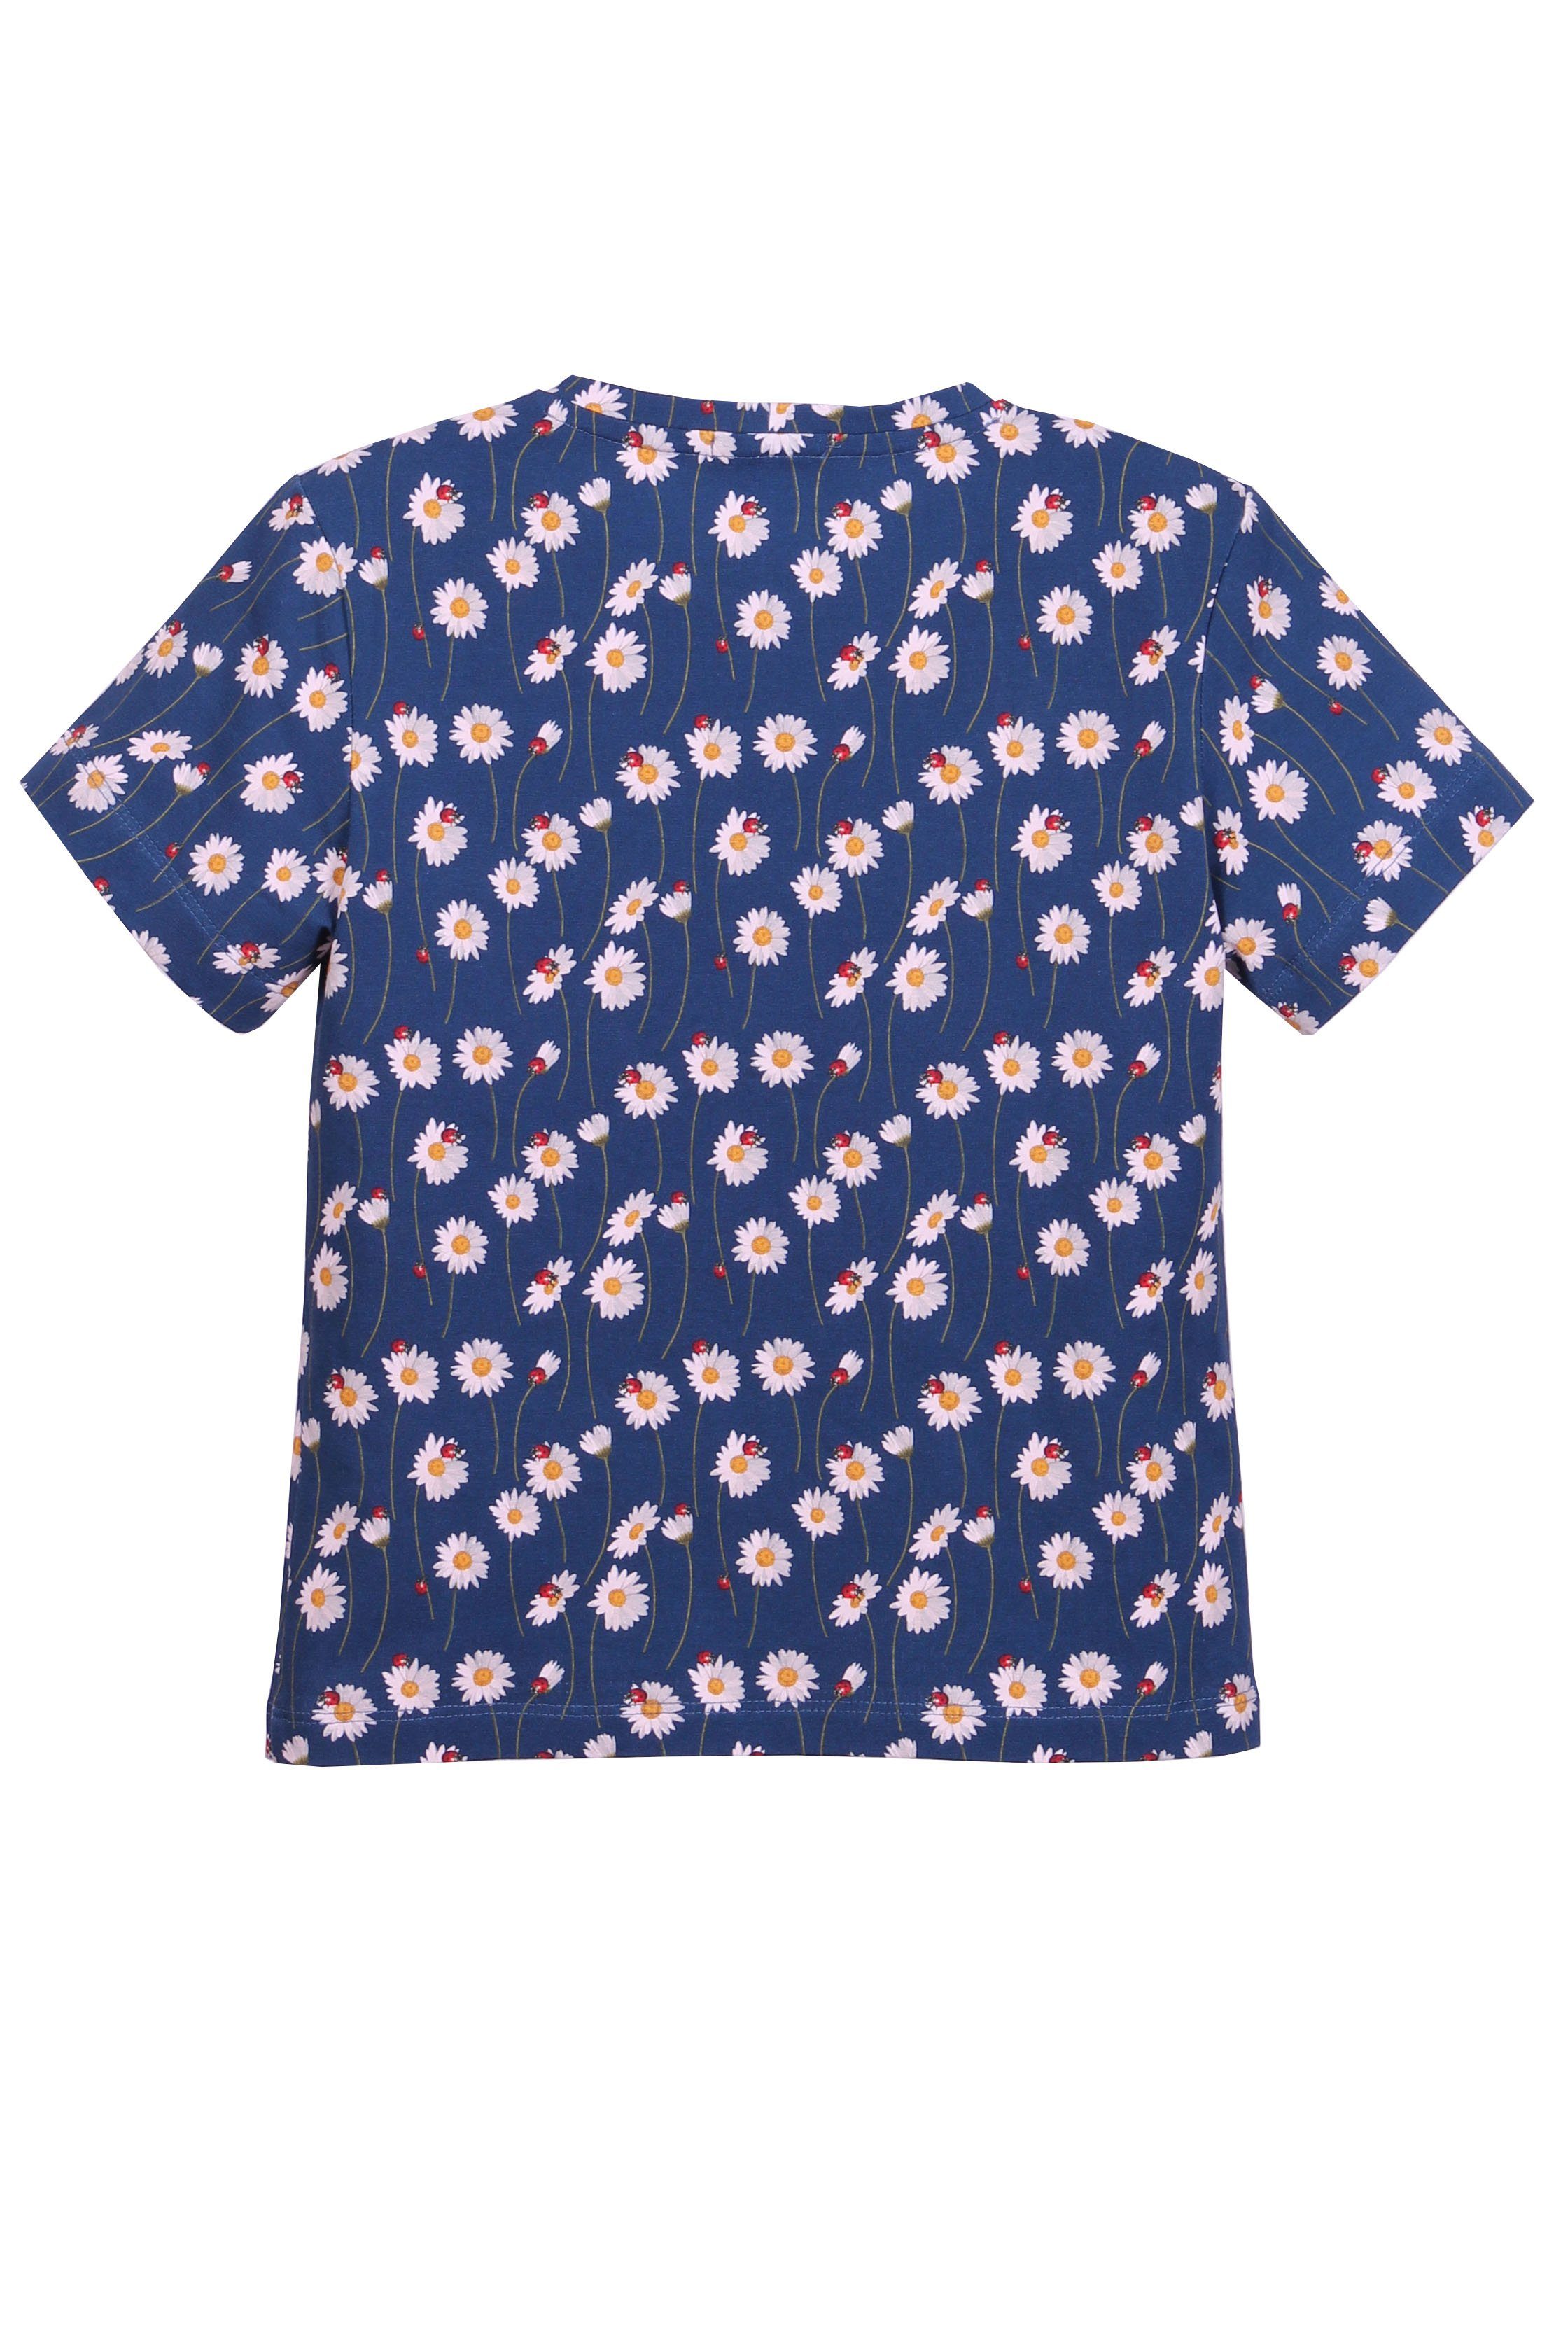 coolismo T-Shirt Print-Shirt für Mädchen Baumwolle Gänseblümchen Alloverprint, Rundhalsausschnitt, mit